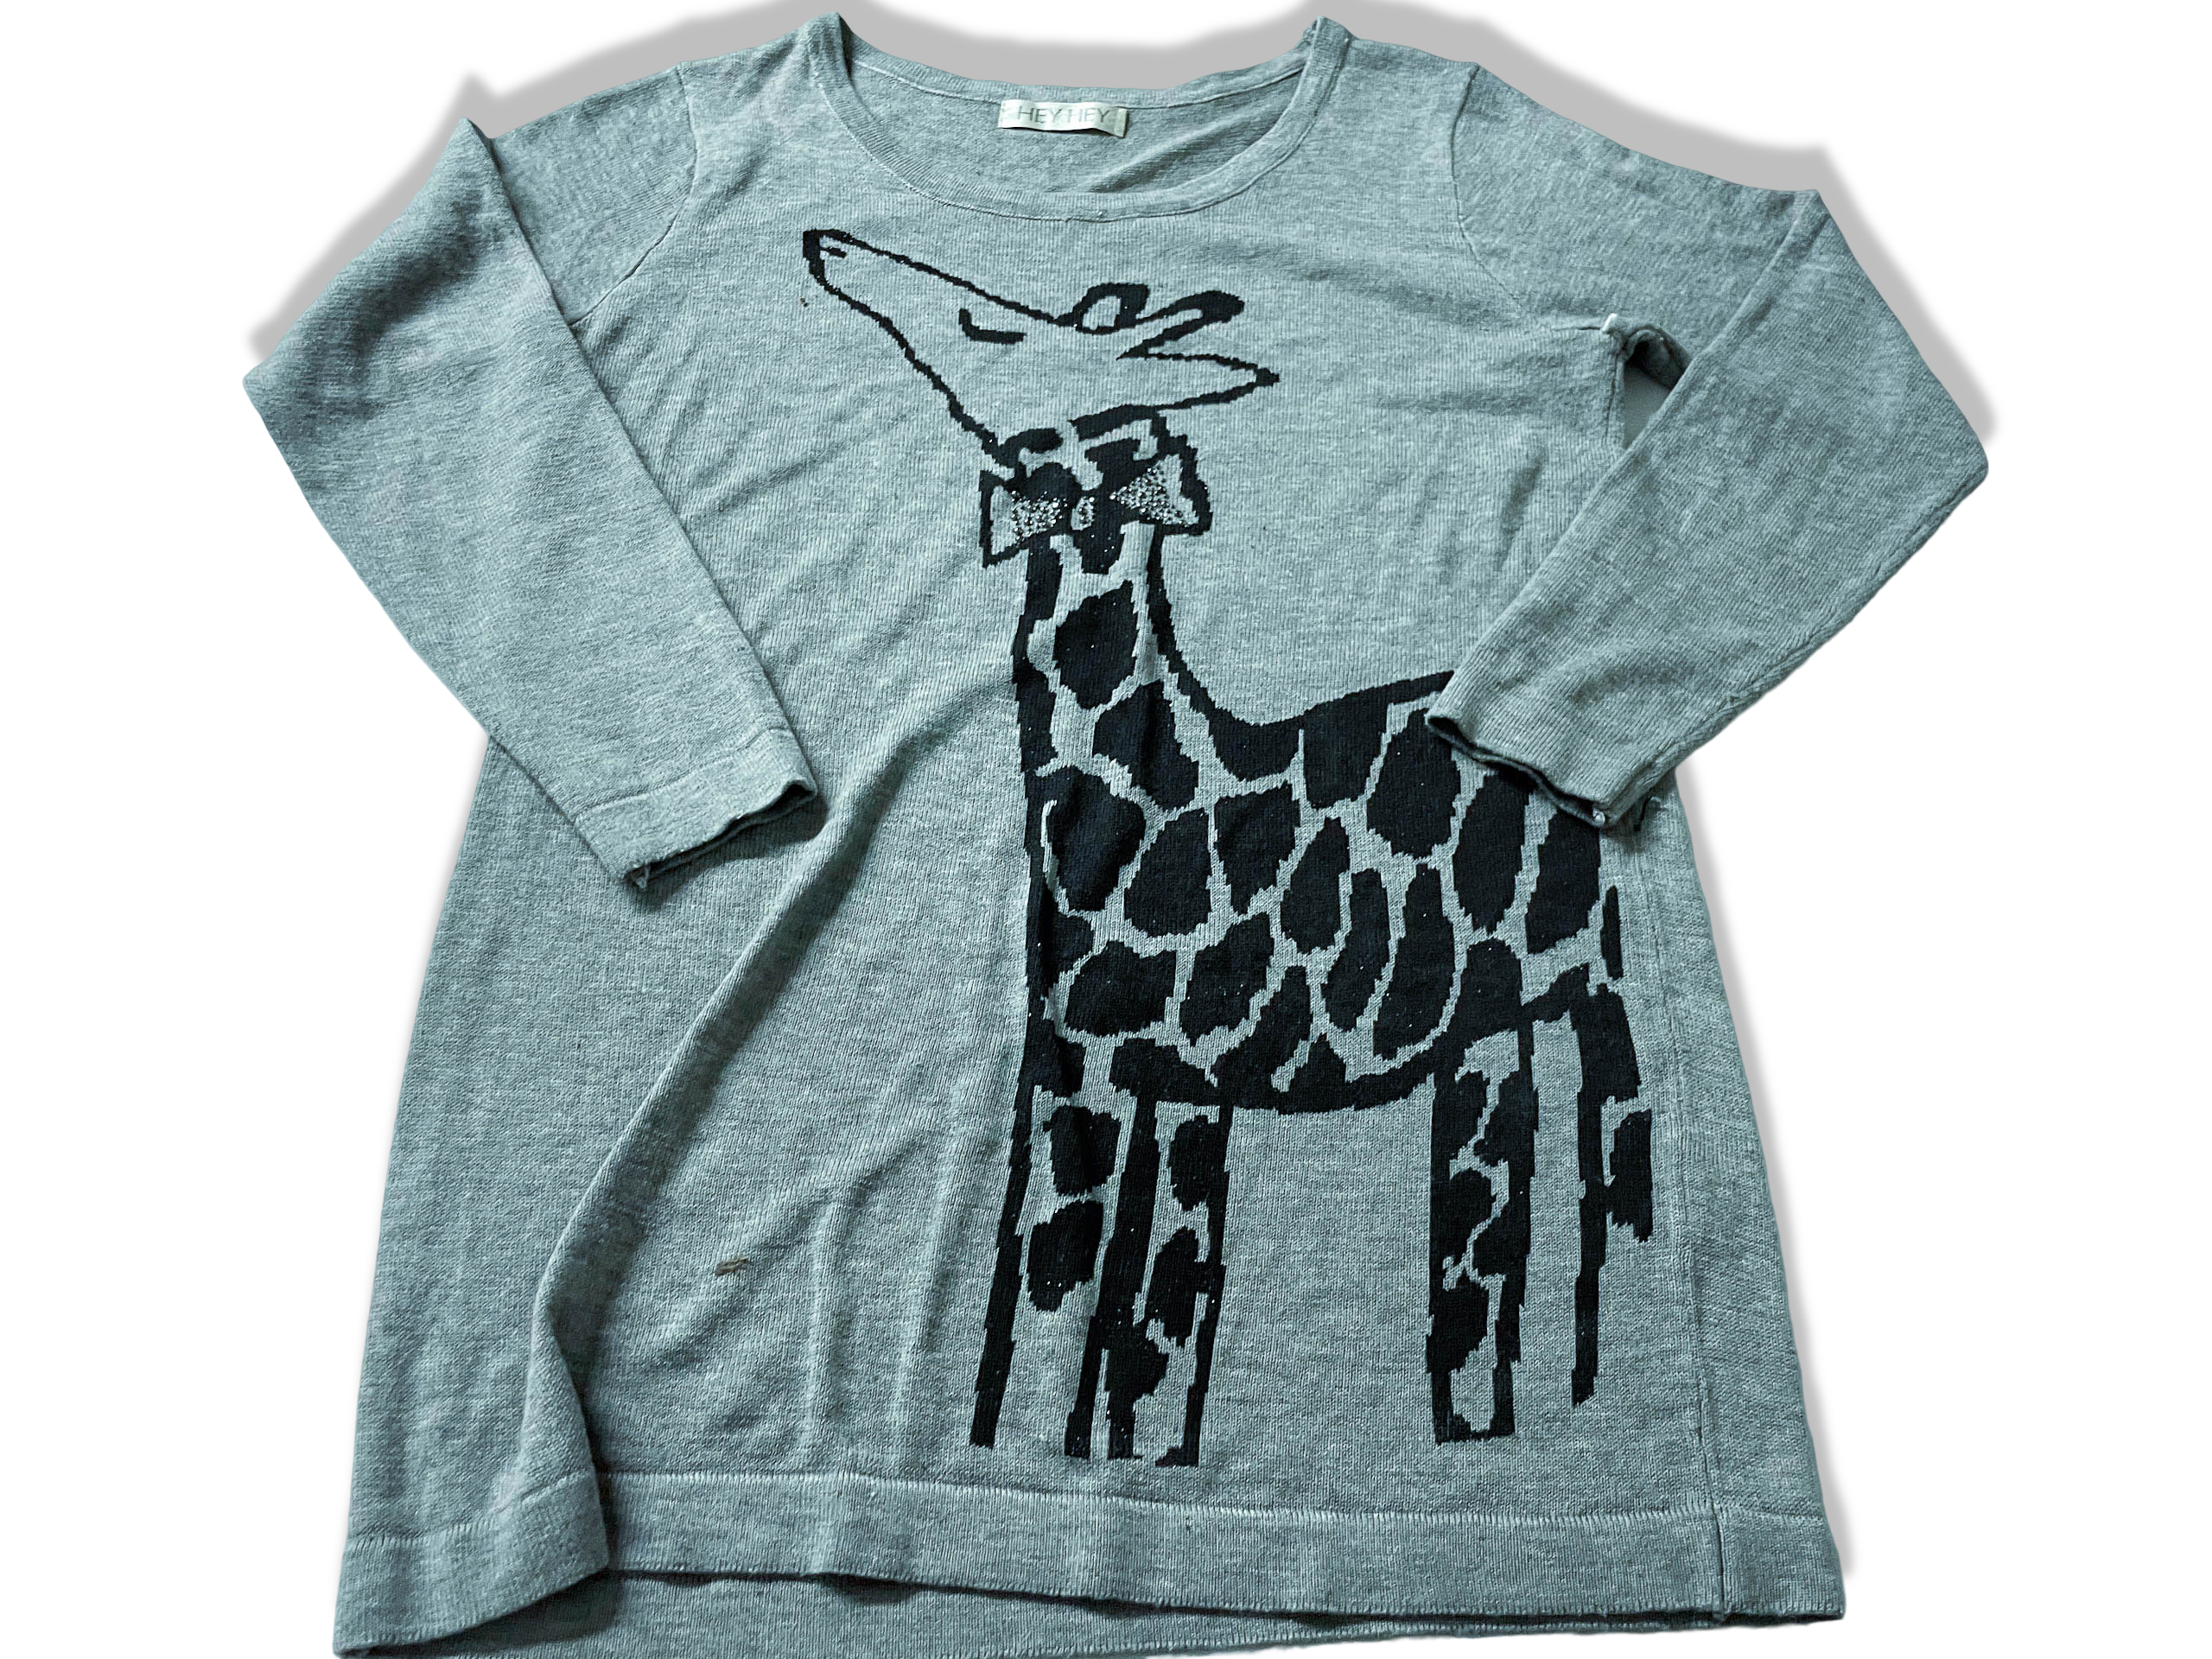 Vintage women's Giraffe print grey sweatshirt in M/L|L26 W18|SKU 3911